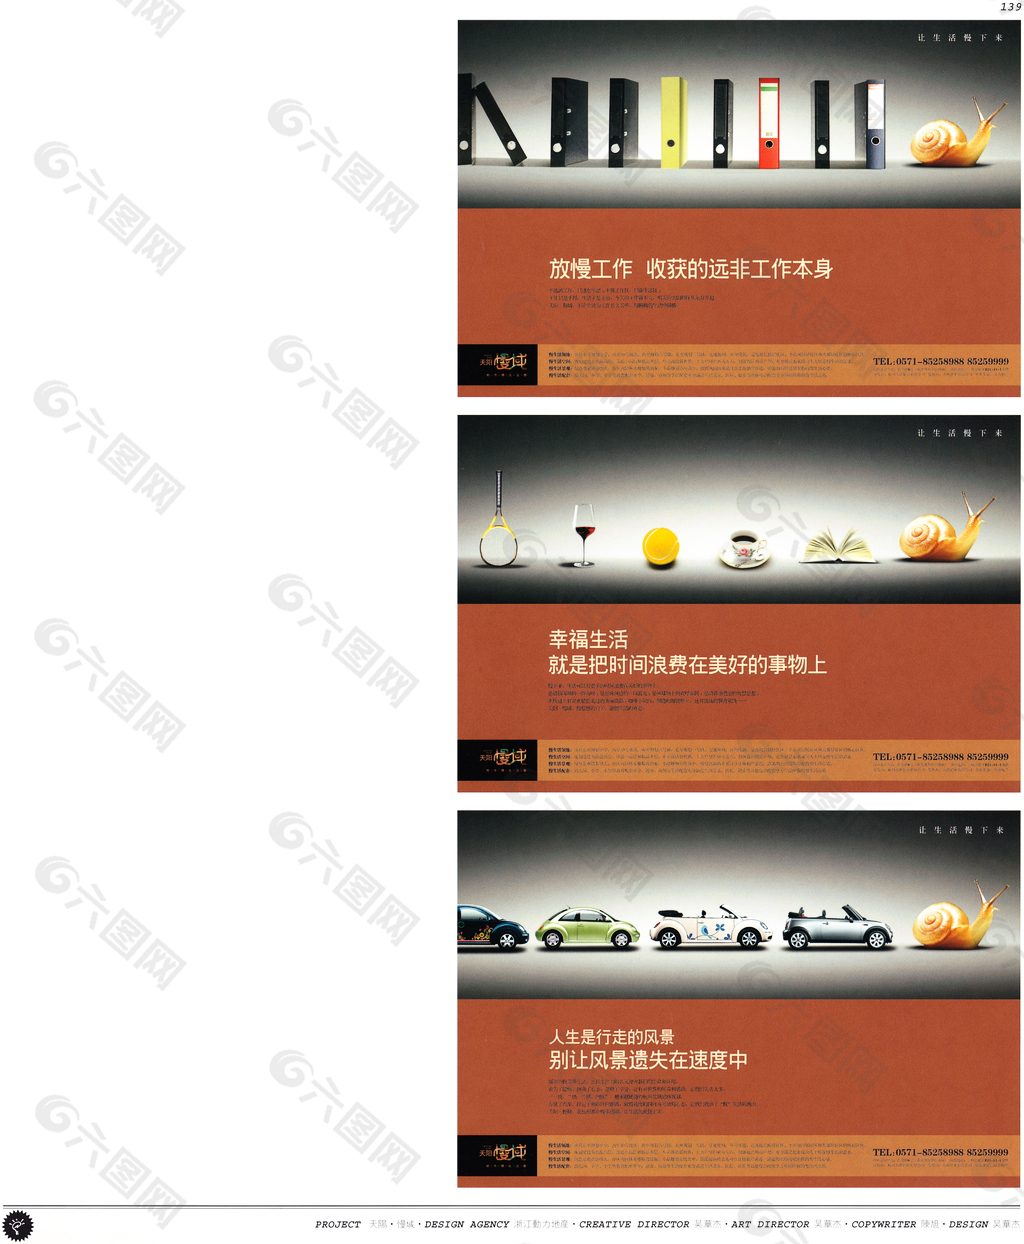 中国房地产广告年鉴 第一册 创意设计_0134